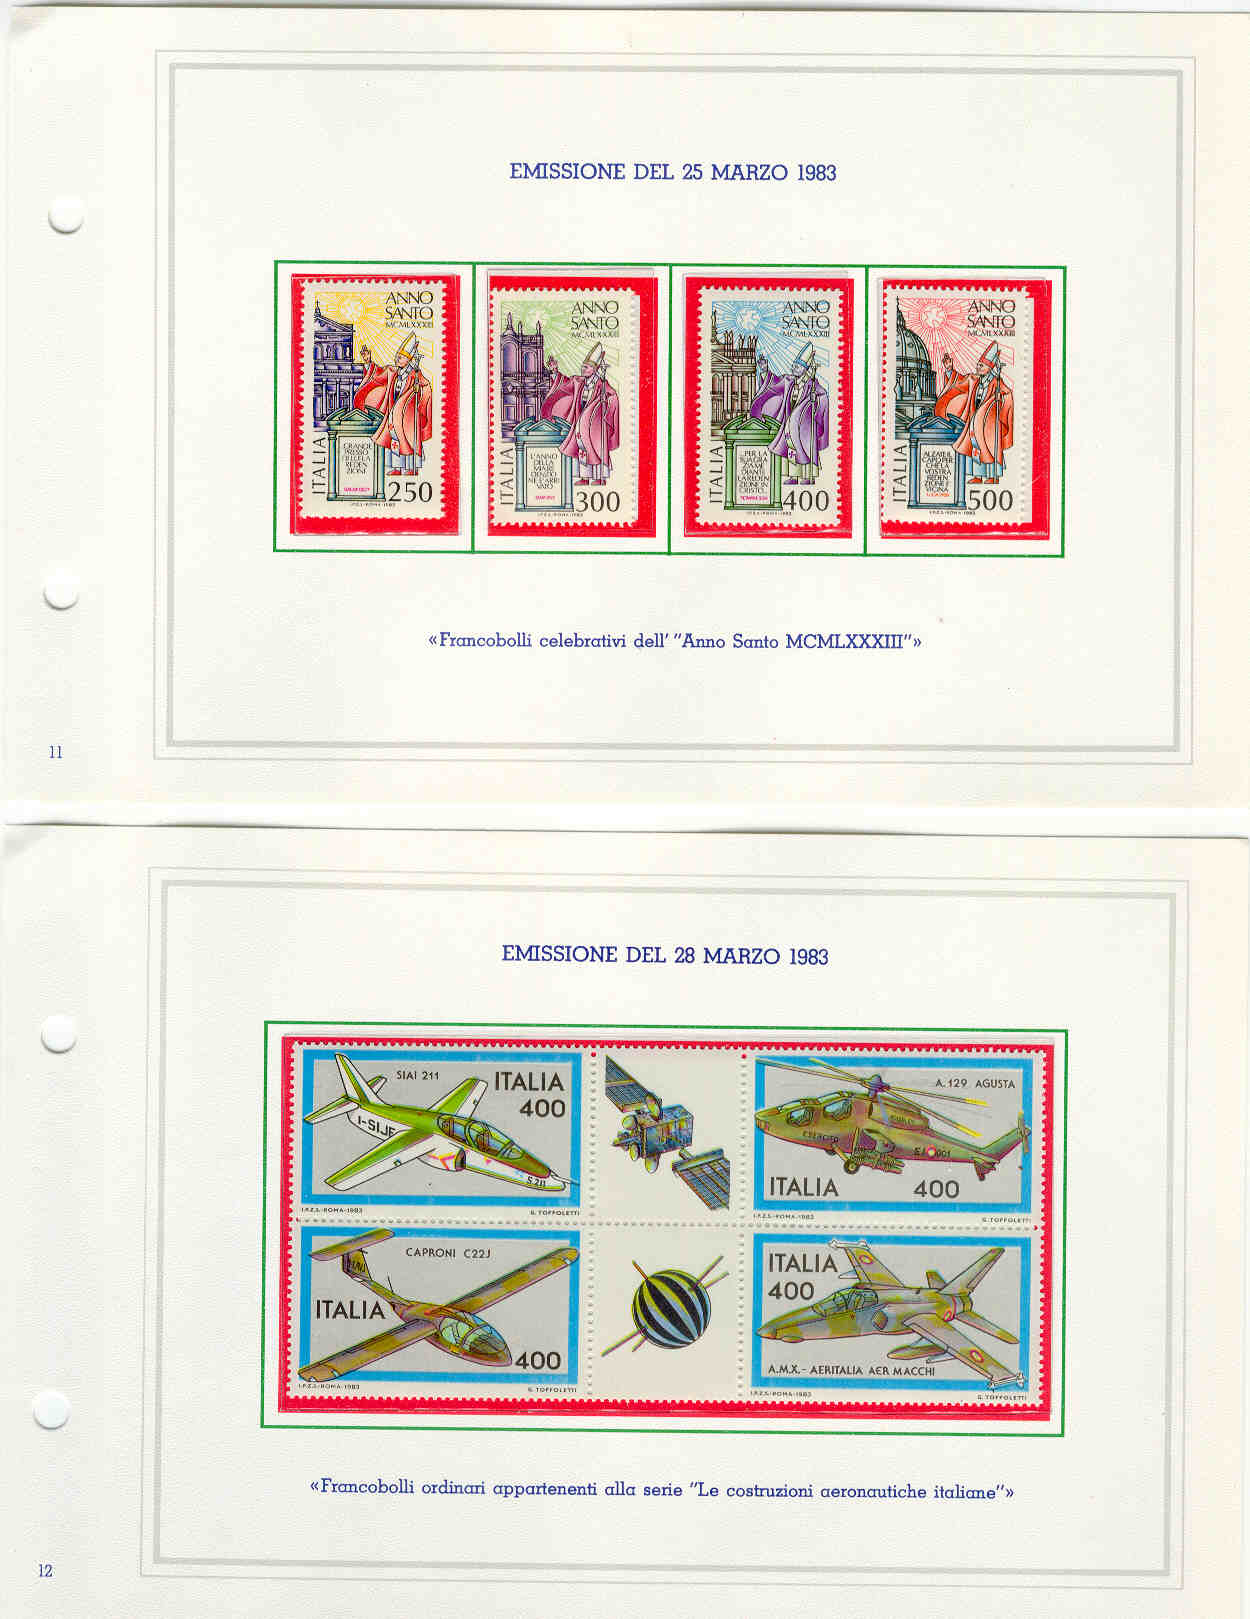 13747 - Italia - Emissione carte valori postali 1983 - annata completa nuova in contenitore delle poste